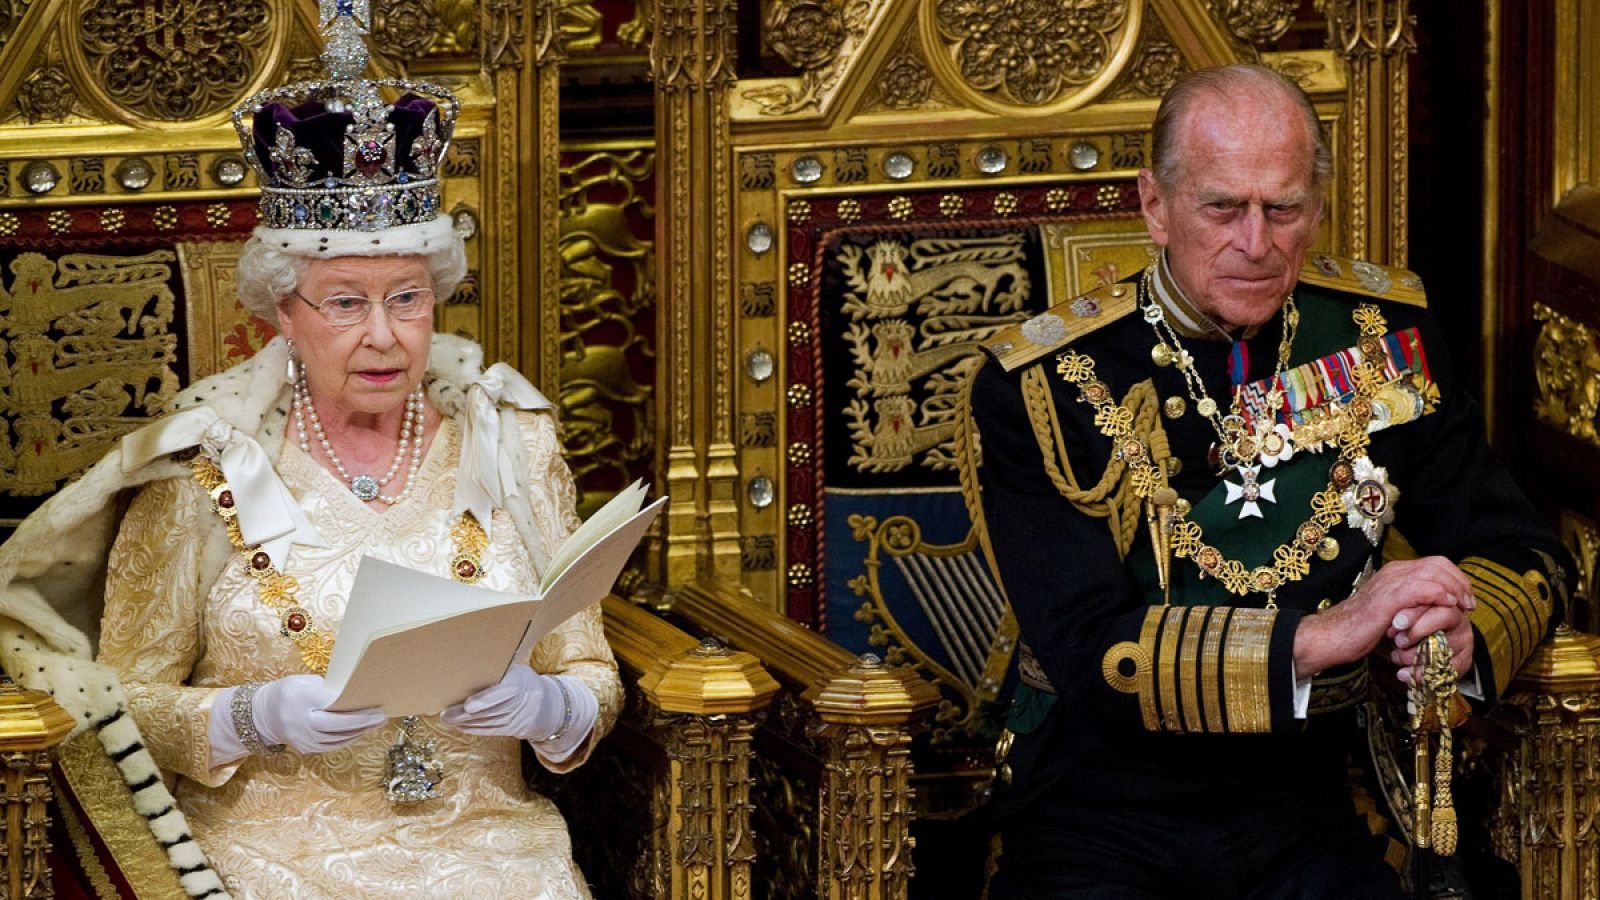 Foto de archivo de la reina Isabel II (izq), acompañada del príncipe Felipe, duque de Edimburgo, mientras pronuncia un discurso ante la Cámara de los Lores durante la ceremonia de la apertura del Parlamento en Londres (Reino Unido) el 25 de mayo de 2010.